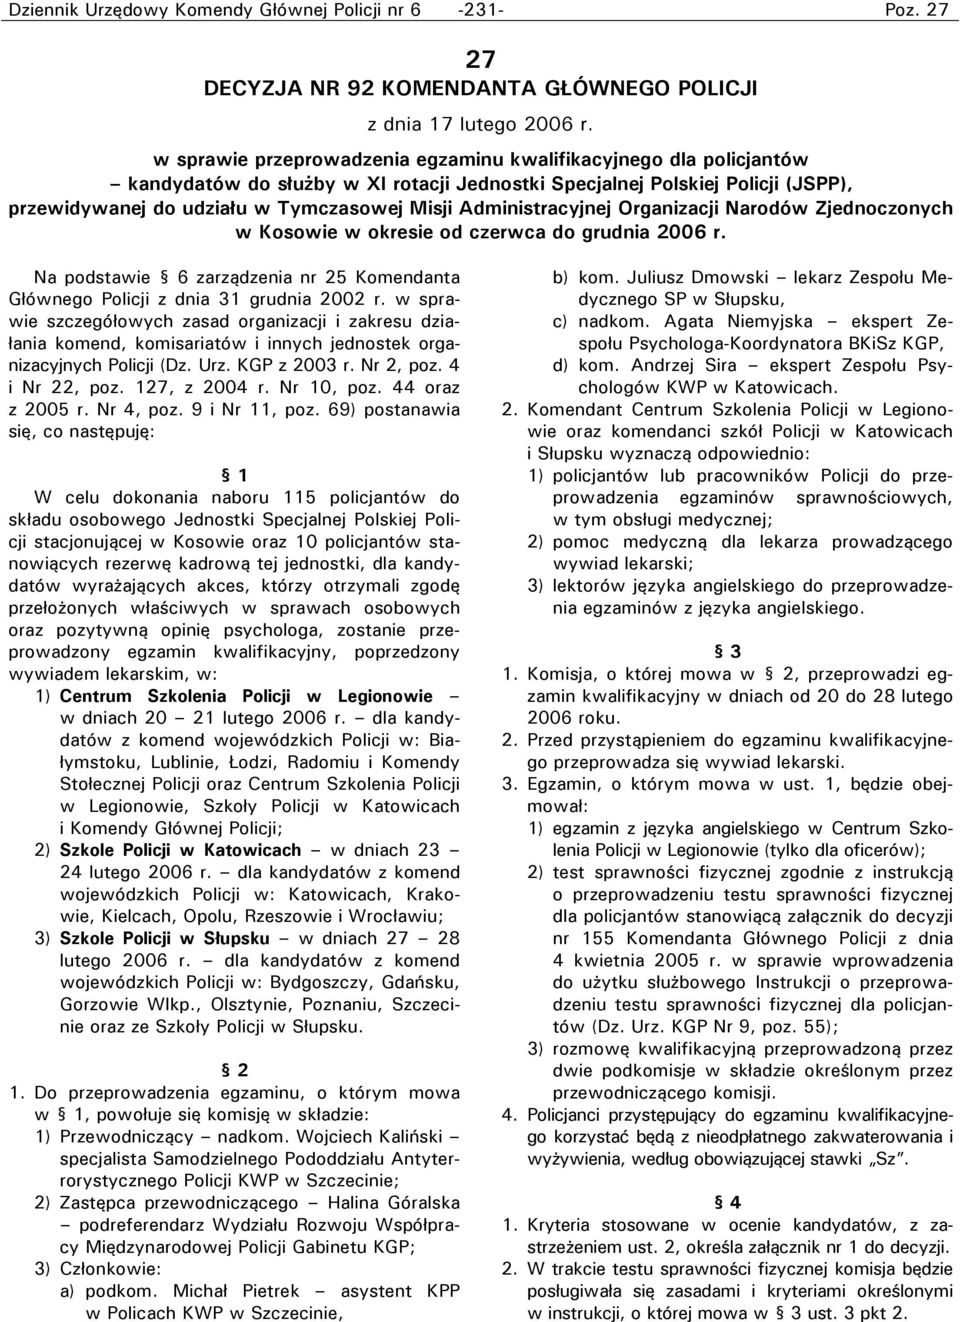 Administracyjnej Organizacji Narodów Zjednoczonych w Kosowie w okresie od czerwca do grudnia 2006 r. Na podstawie 6 zarządzenia nr 25 Komendanta Głównego Policji z dnia 31 grudnia 2002 r.